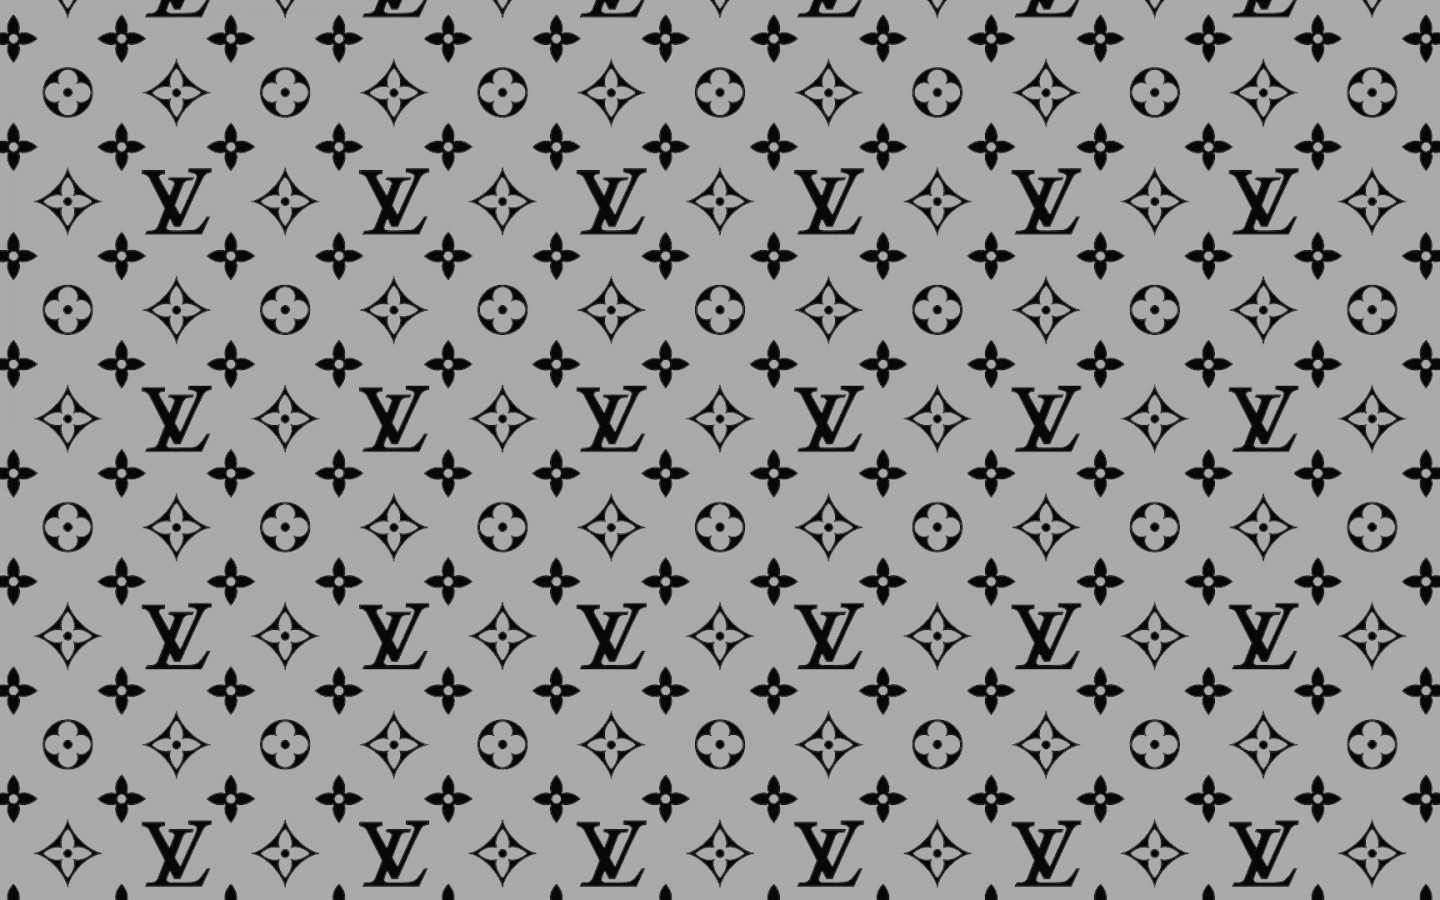 Louis Vuitton wallpaper 1440x900 71255 1440x900